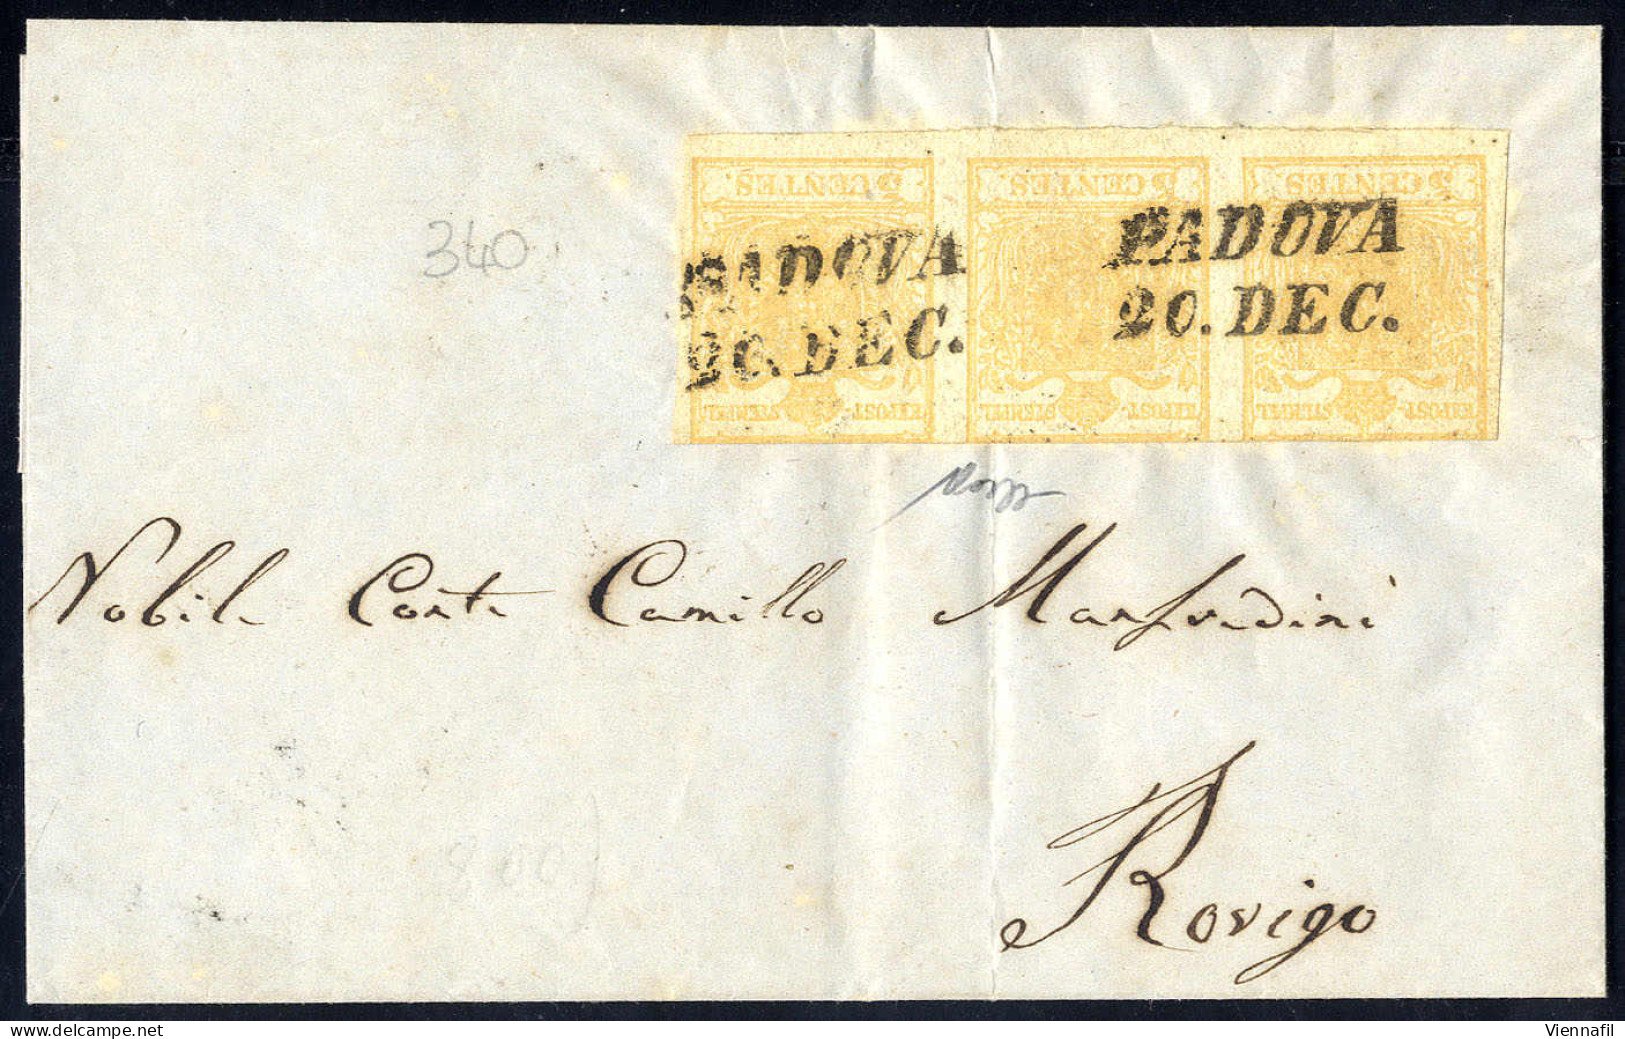 Cover 1850, 5 Cent, Giallo Arancio Chiaro, Striscia Di Tre (a Filo In Alto) Su Lettera Da Padova Per Rovigo, Firm. Caffa - Lombardo-Veneto